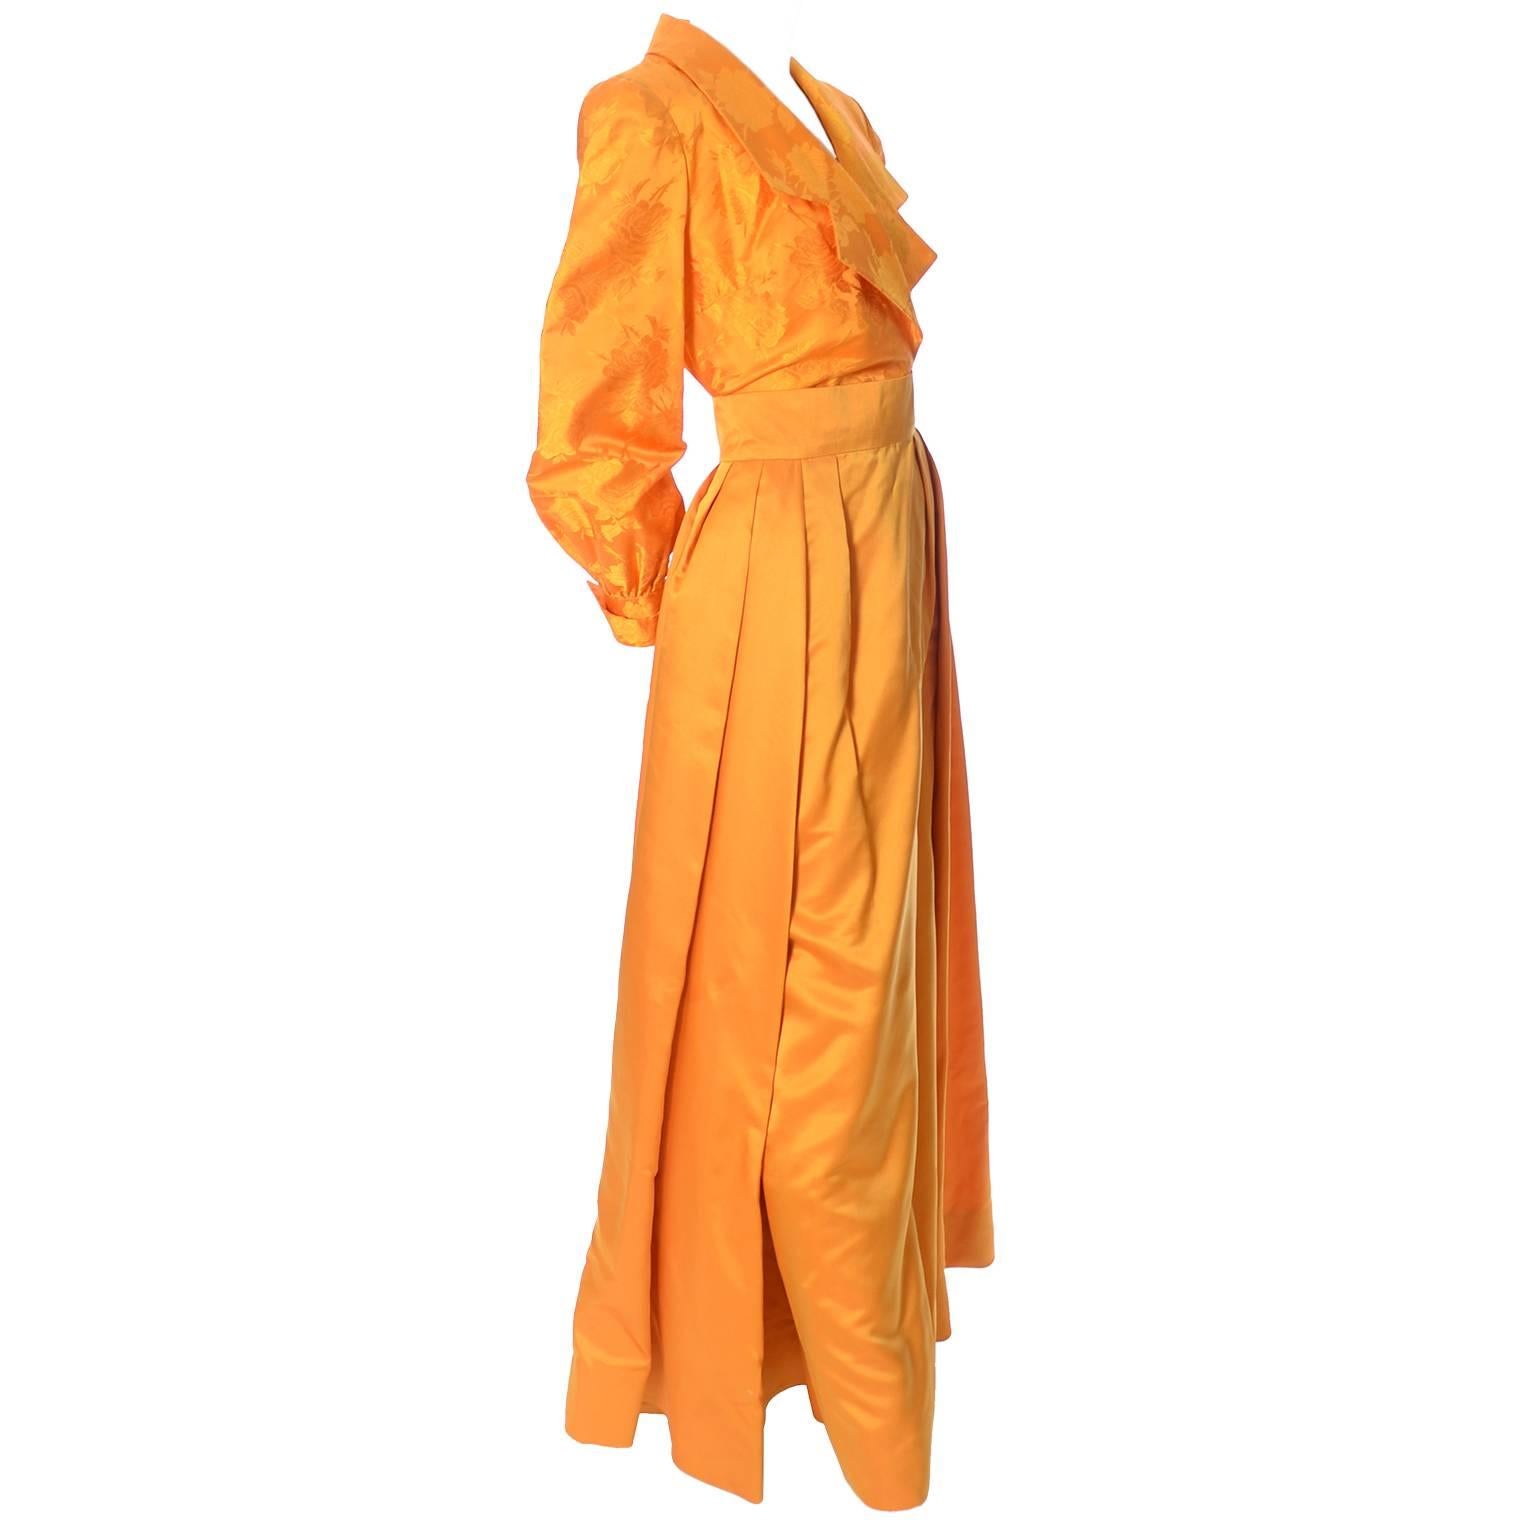 Estevez Couture Vintage Silk Statement Dress 2 Pc Evening Gown 1970s